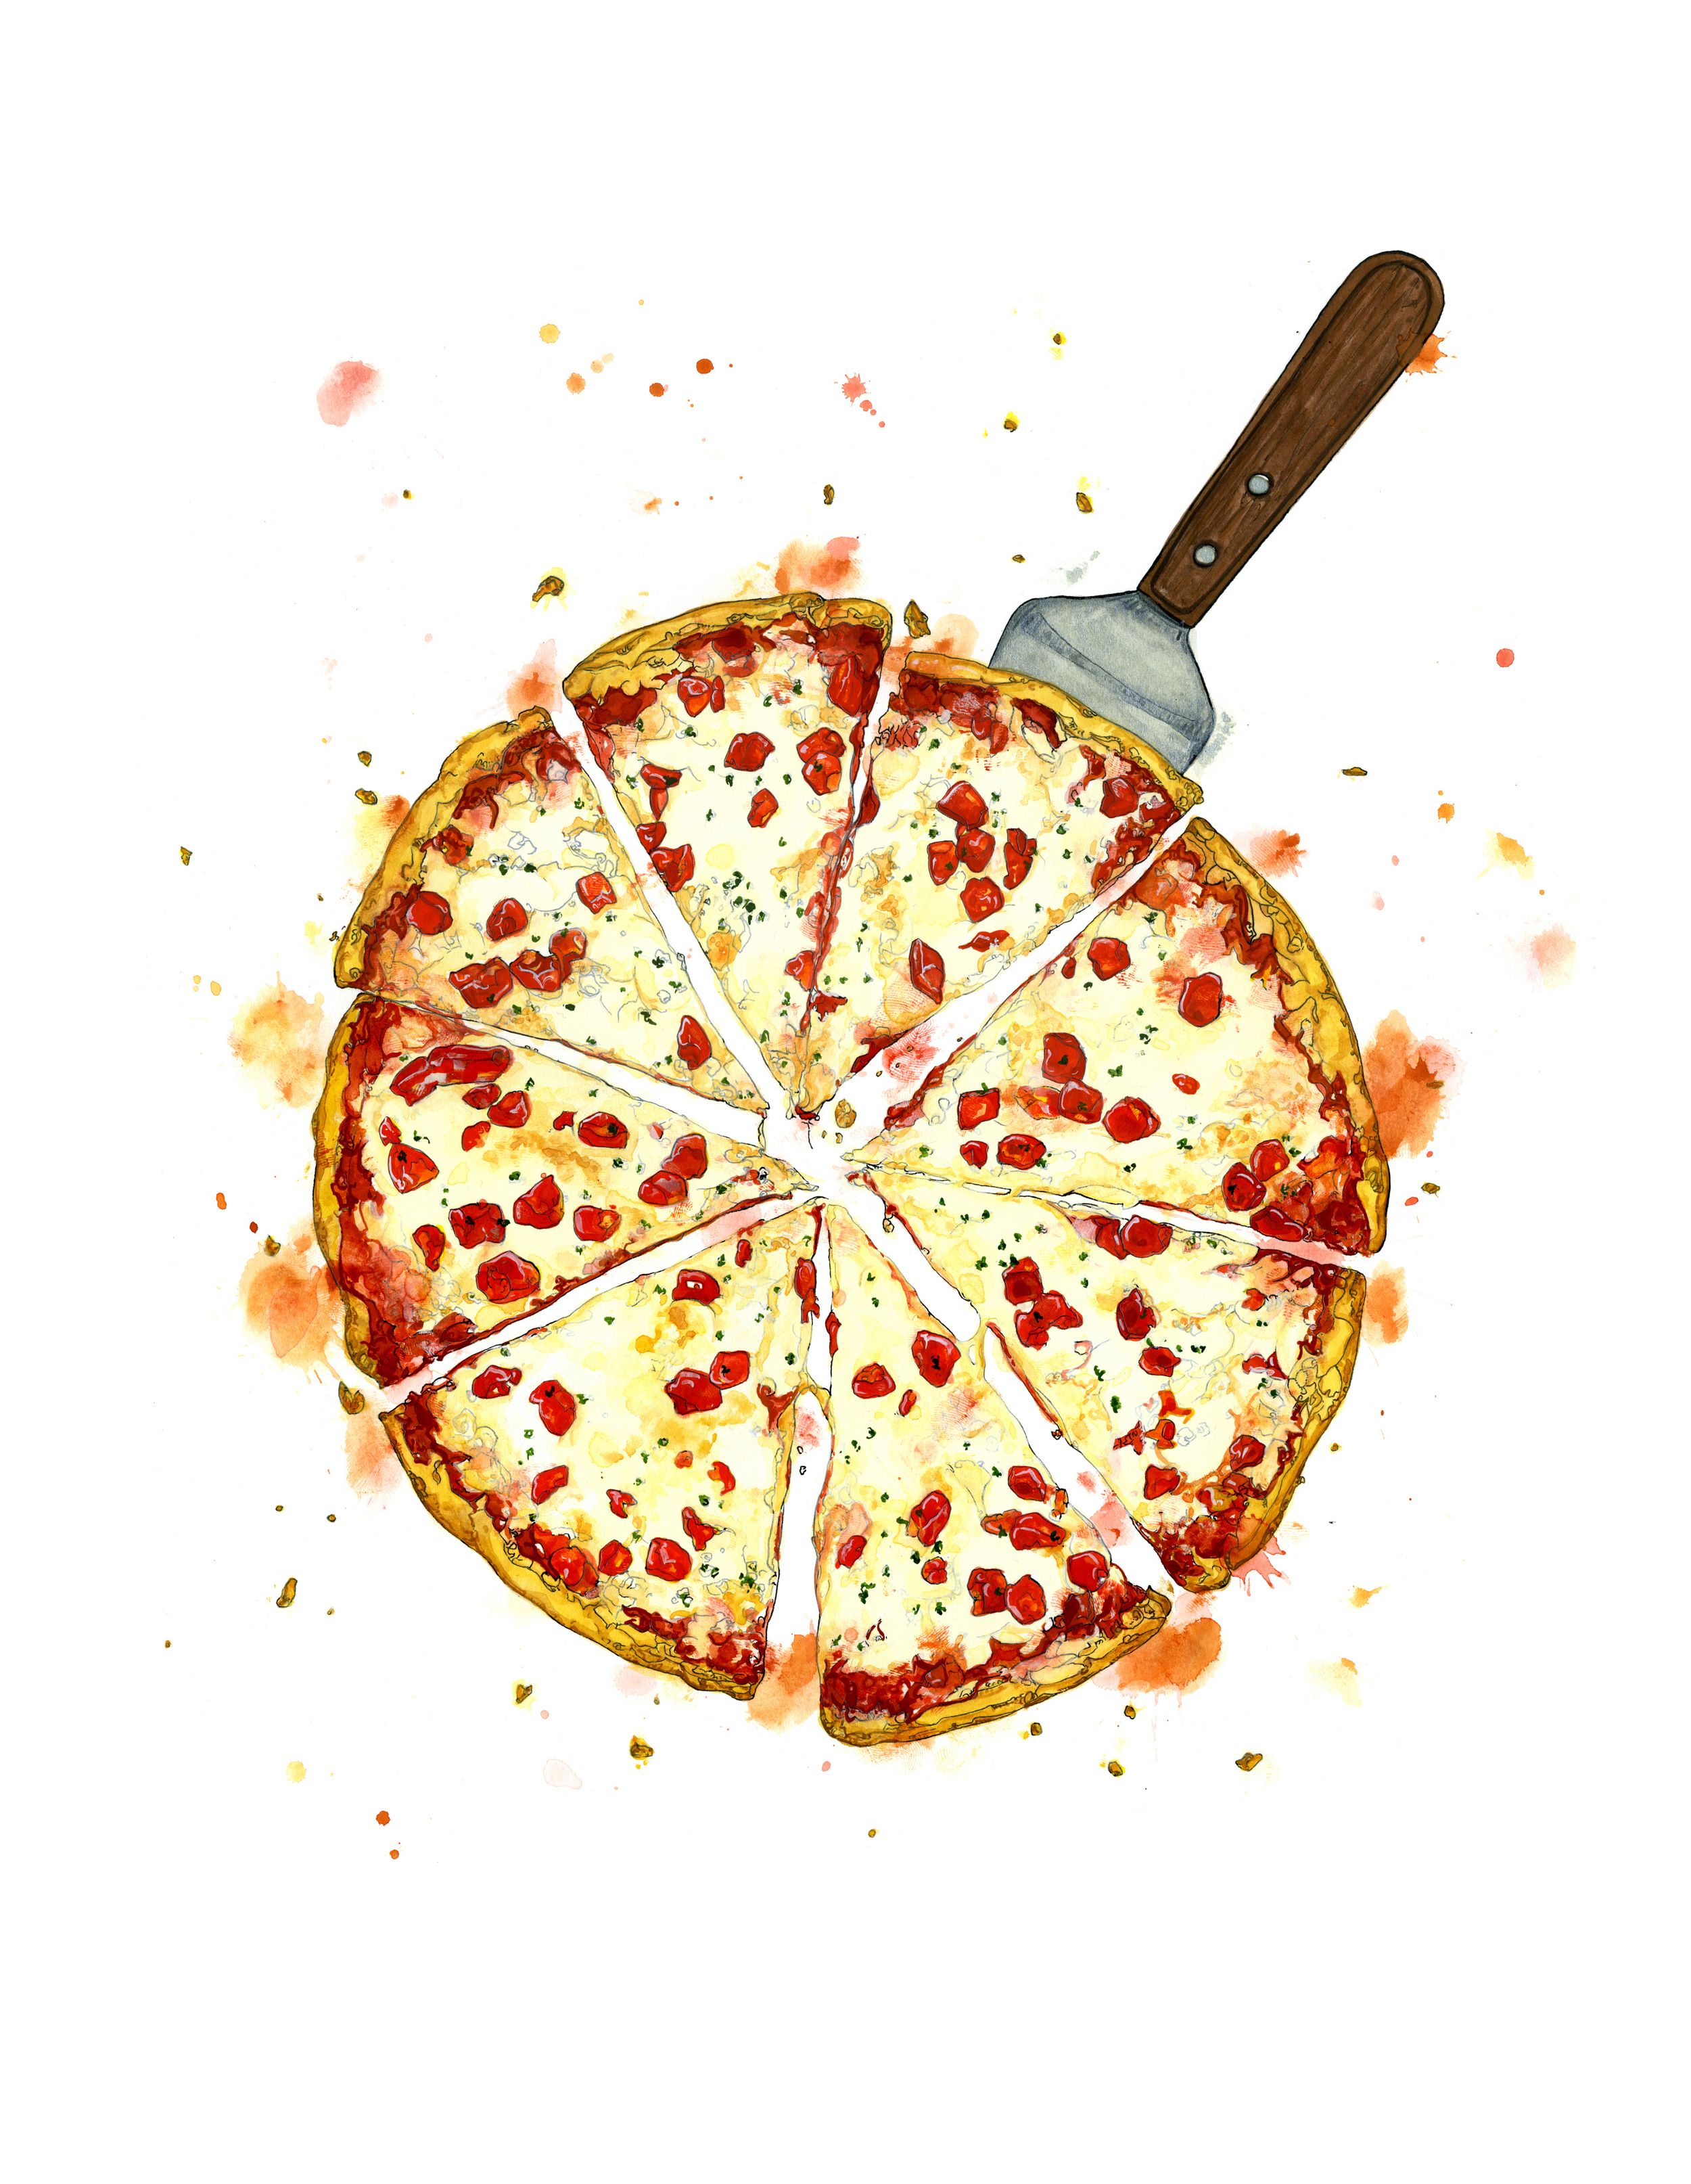 Emma Dibben - Pizza Food Illustrations , HD Wallpaper & Backgrounds